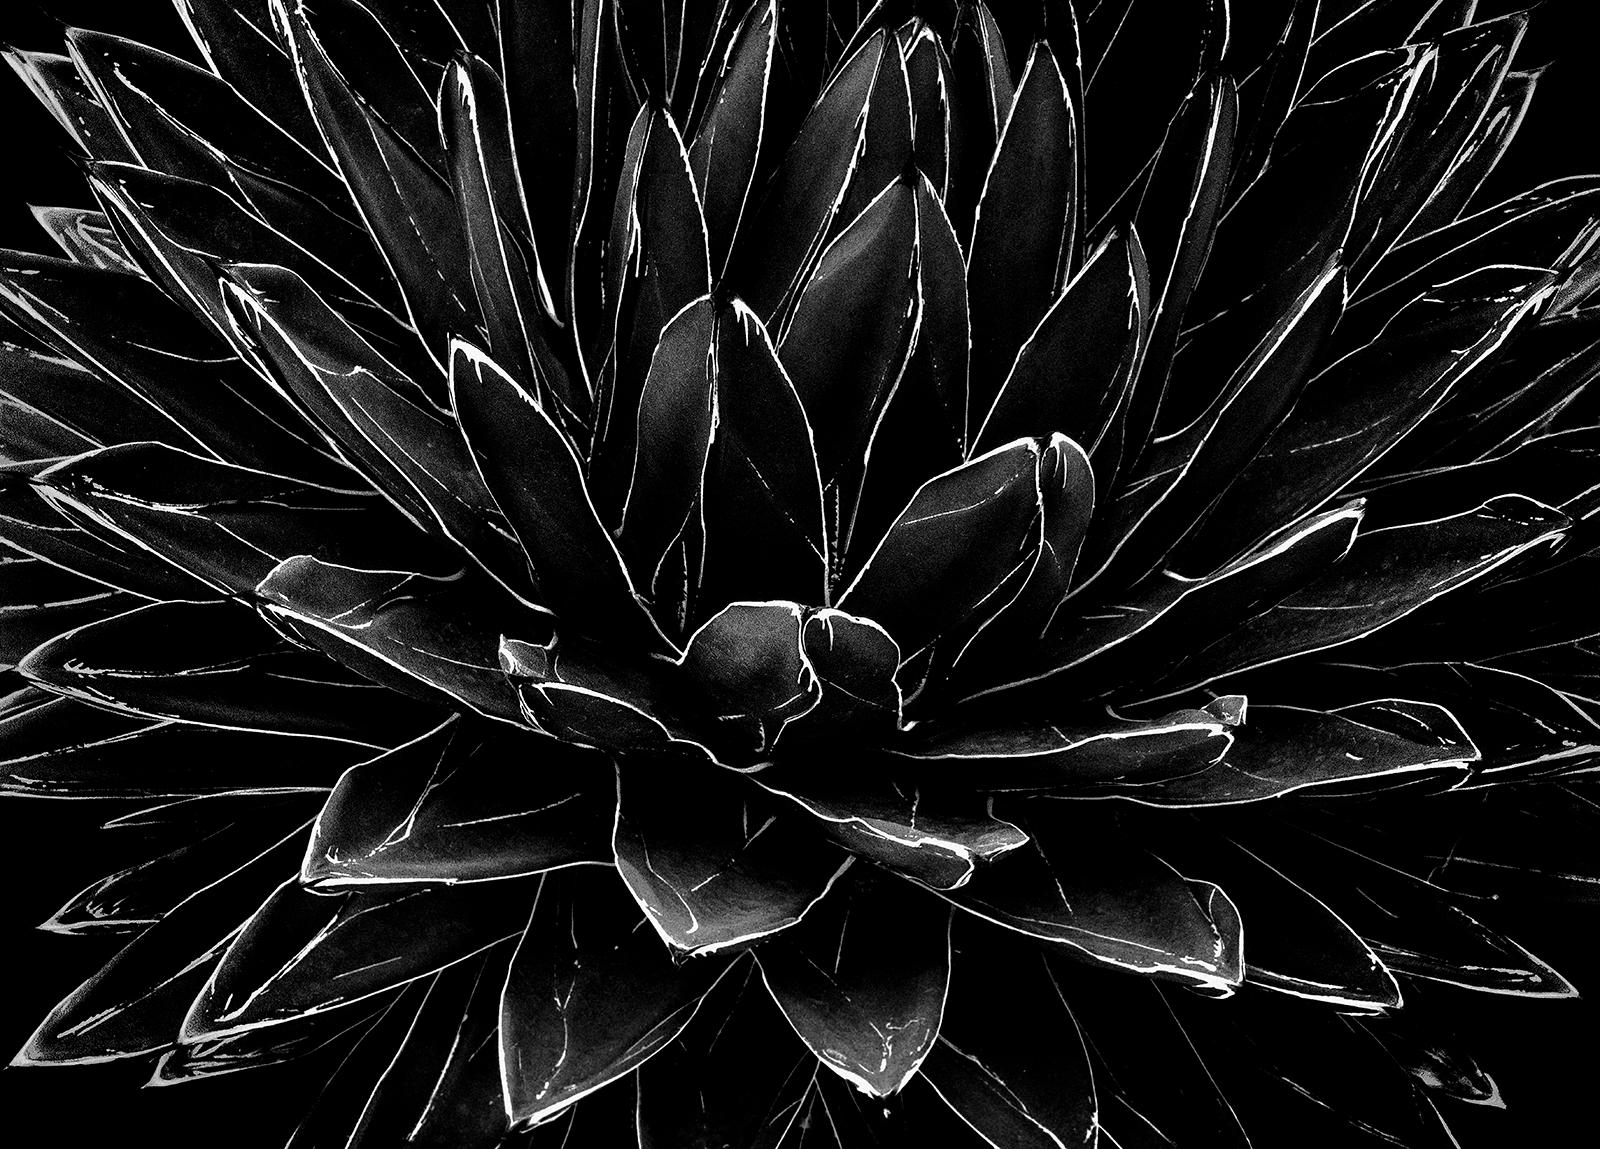 Ian Sanderson Black and White Photograph – Cactus-Signierter Stilllebendruck in limitierter Auflage, Schwarz-Weiß- Natur, zeitgenössisch